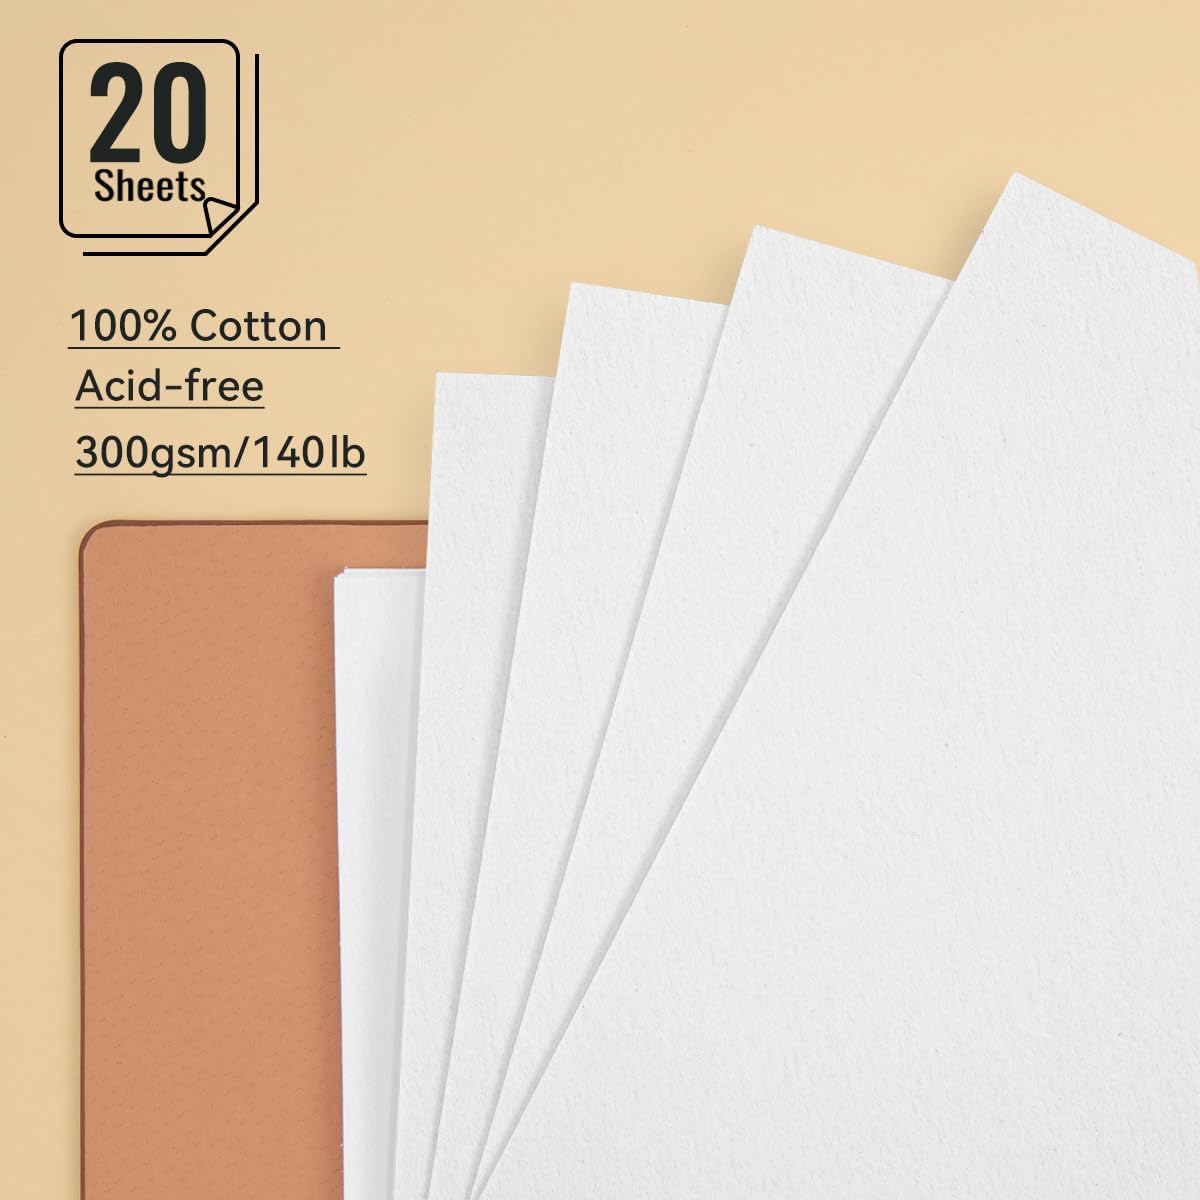 Lightwish Journal/carnet de croquis aquarelle 100 % coton sans acide, 300 g/m²/140 lb, papier aquarelle pressé à chaud, 20 feuilles, 9,25 x 6,3 pouces